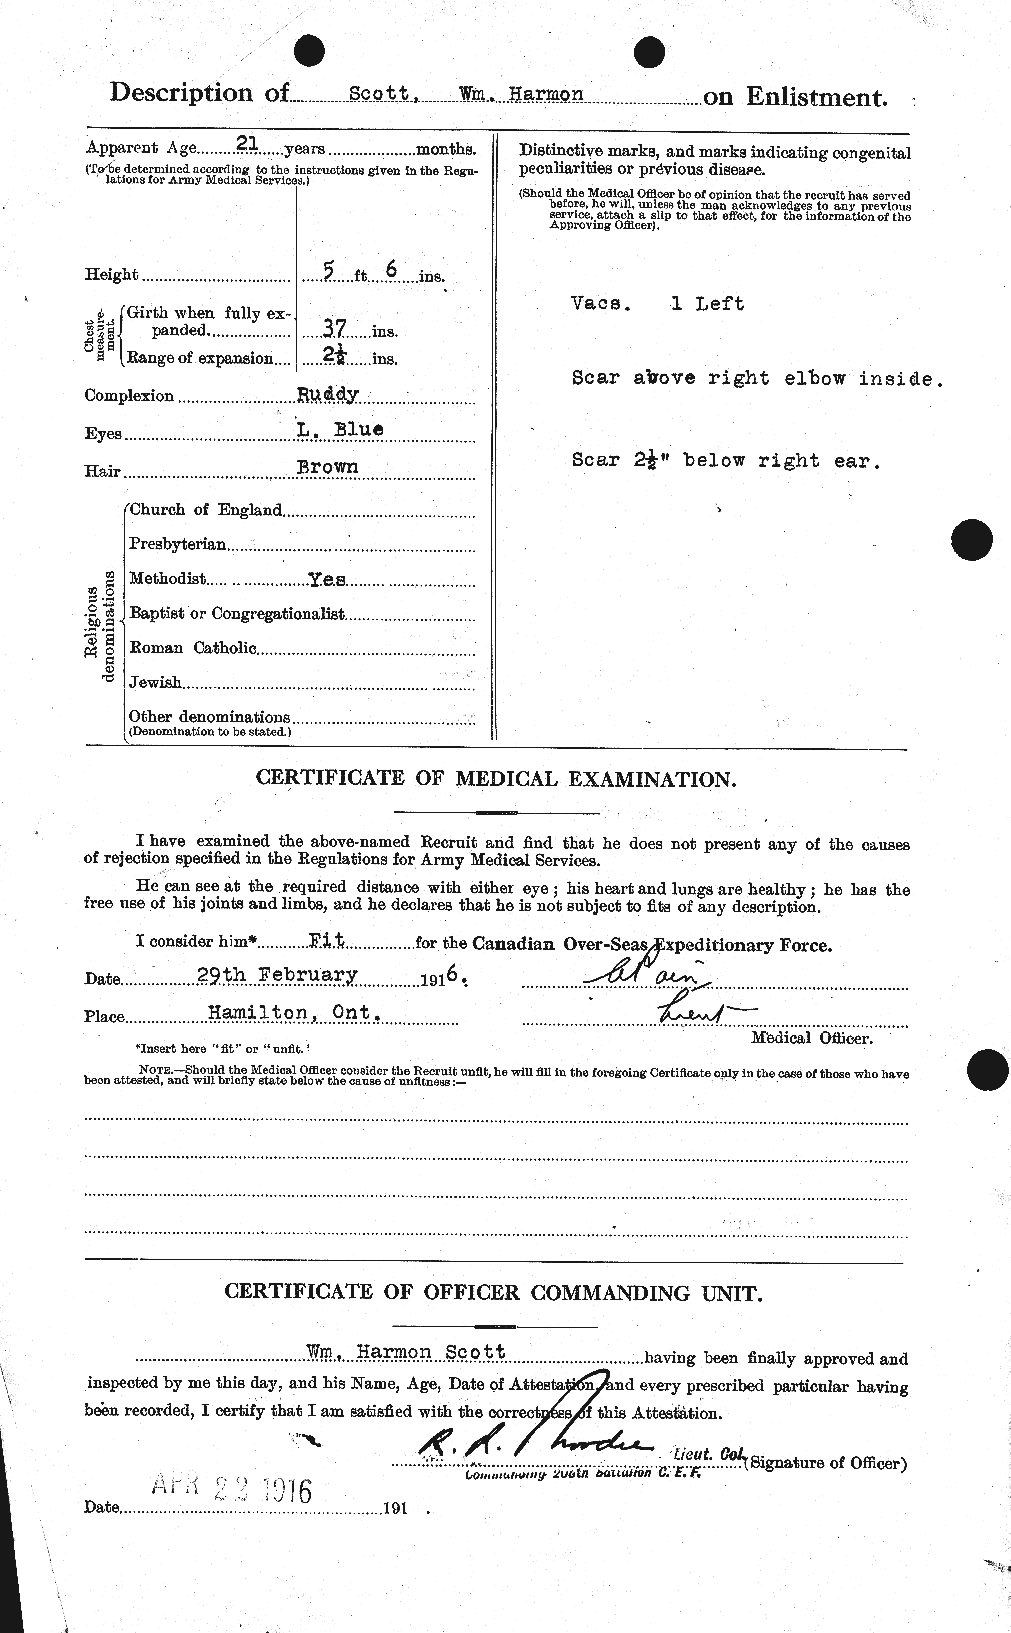 Dossiers du Personnel de la Première Guerre mondiale - CEC 087005b